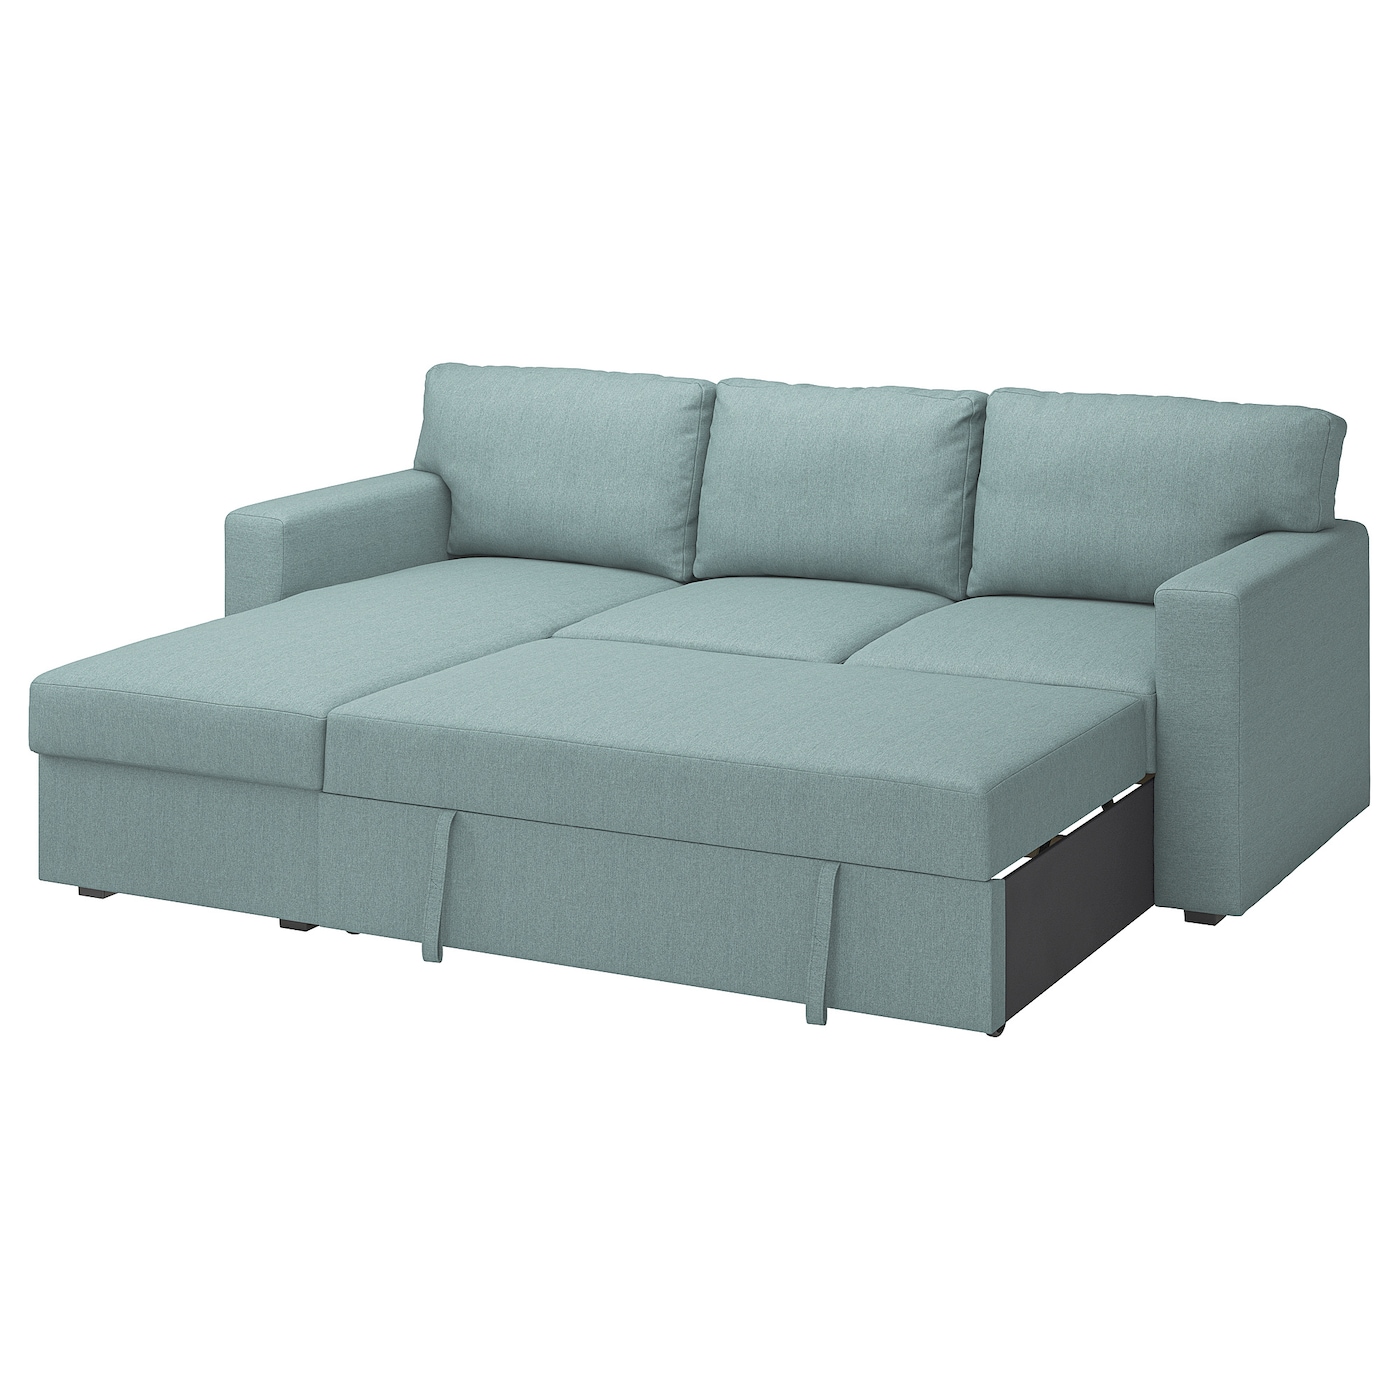 нексус 01 диван кровать БОРСЛОВ 3-местный диван-кровать + диван, Тибблби светло-серый бирюзовый BÅRSLÖV IKEA